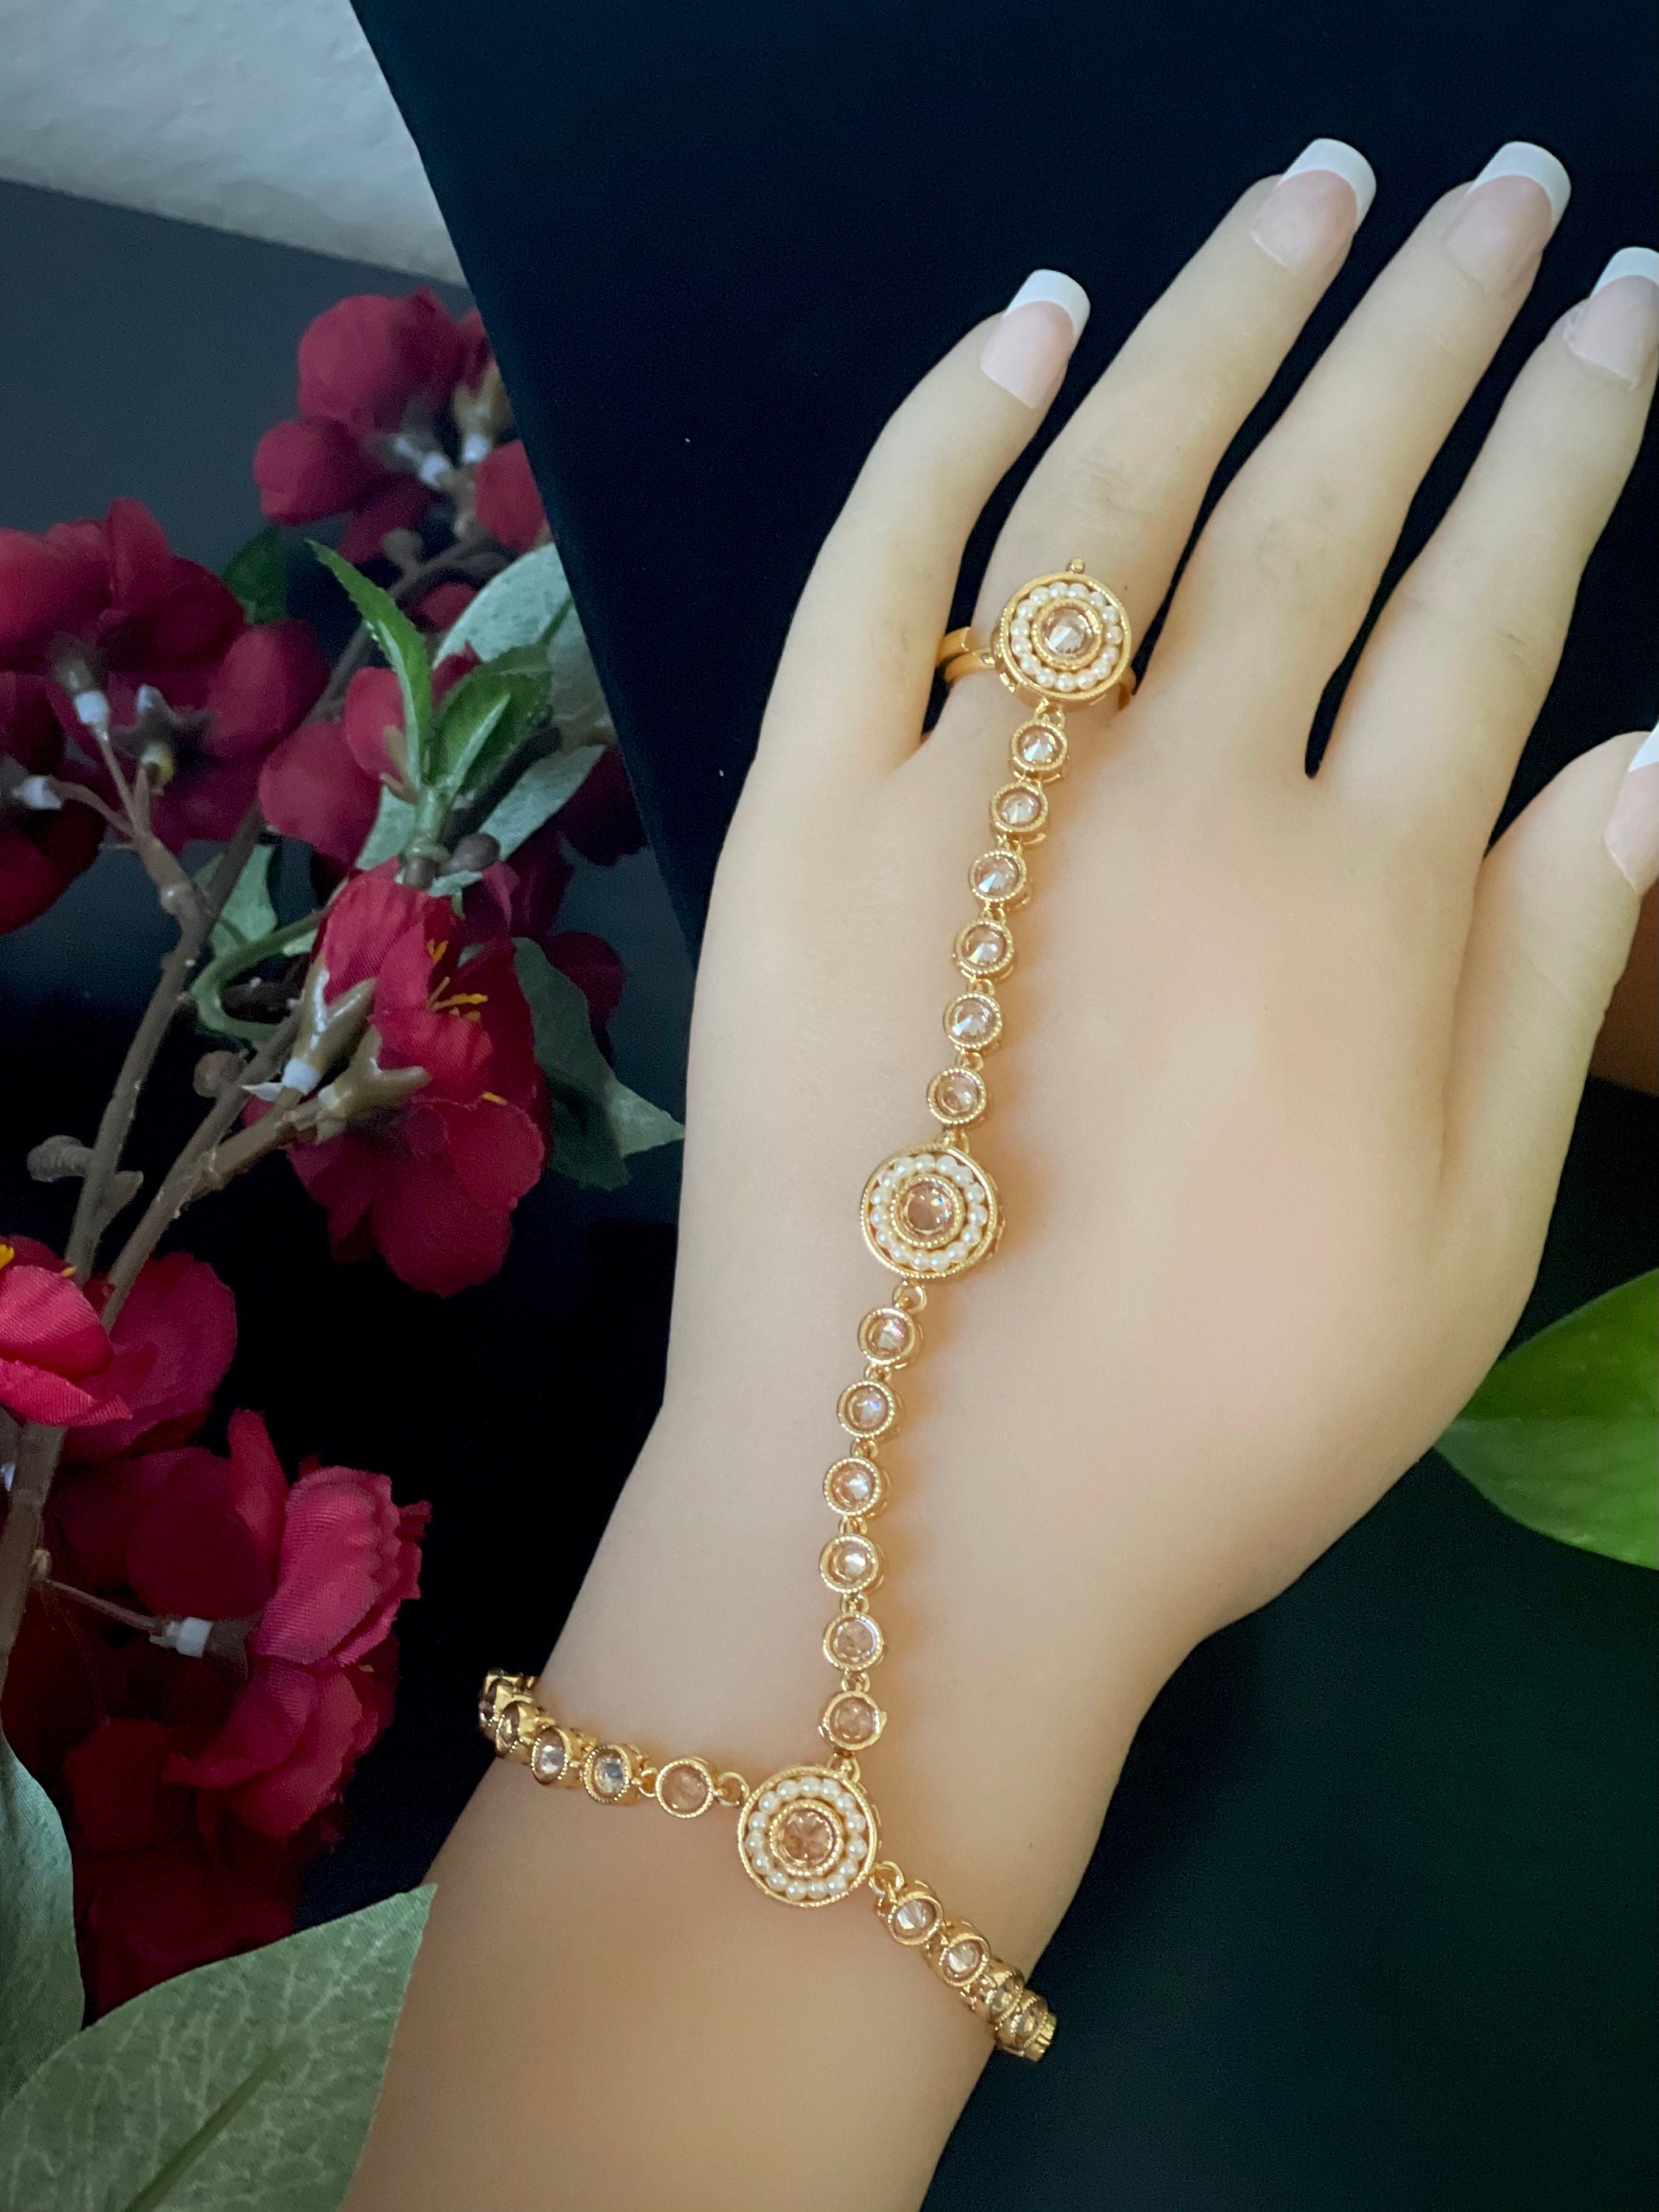 Bracelet, Stainless Steel Chain Bracelet Ring, Hand Chain, Valentine's Day  Gift Love - Etsy